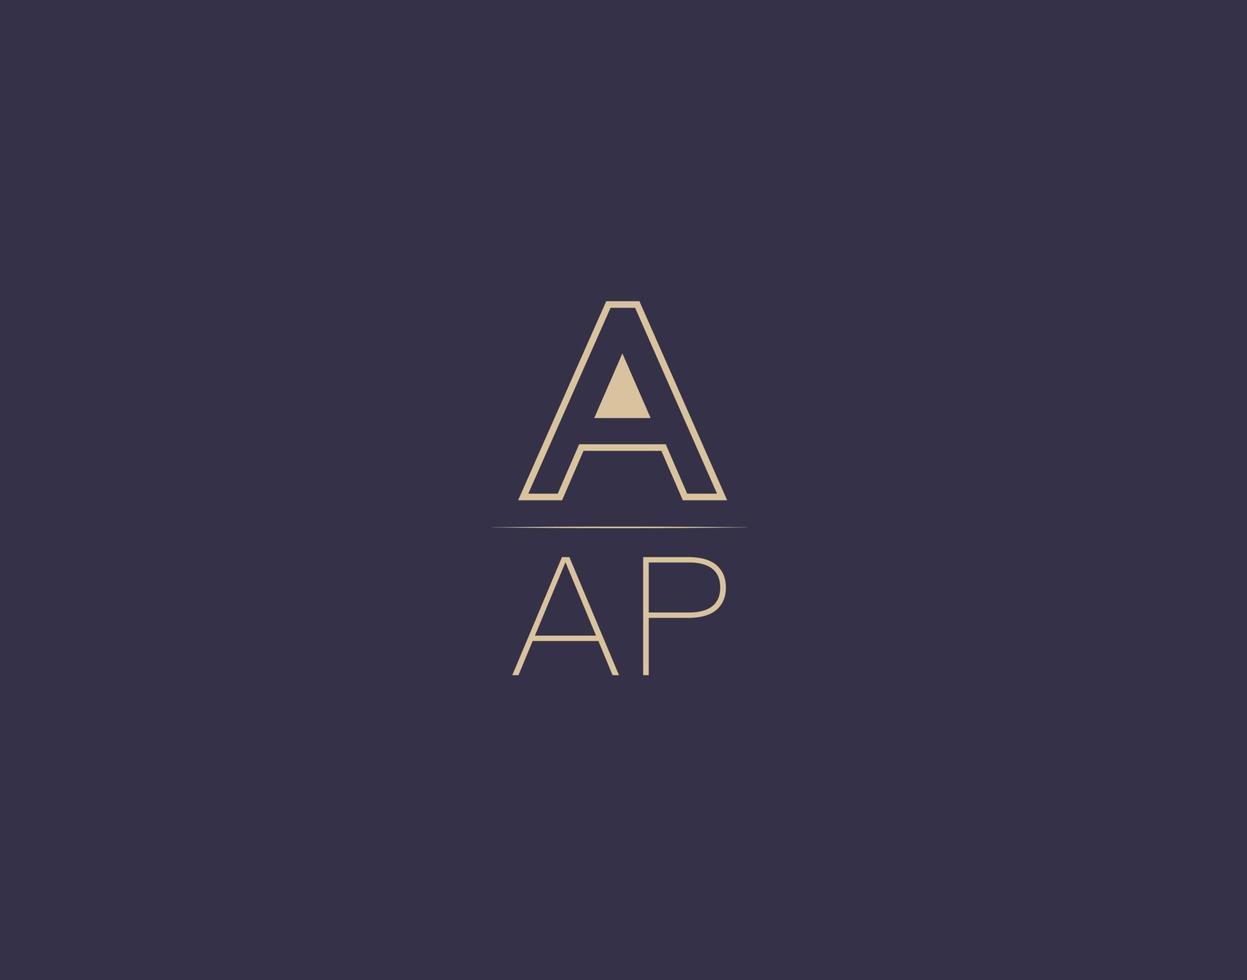 aap carta logo diseño moderno minimalista vector imágenes